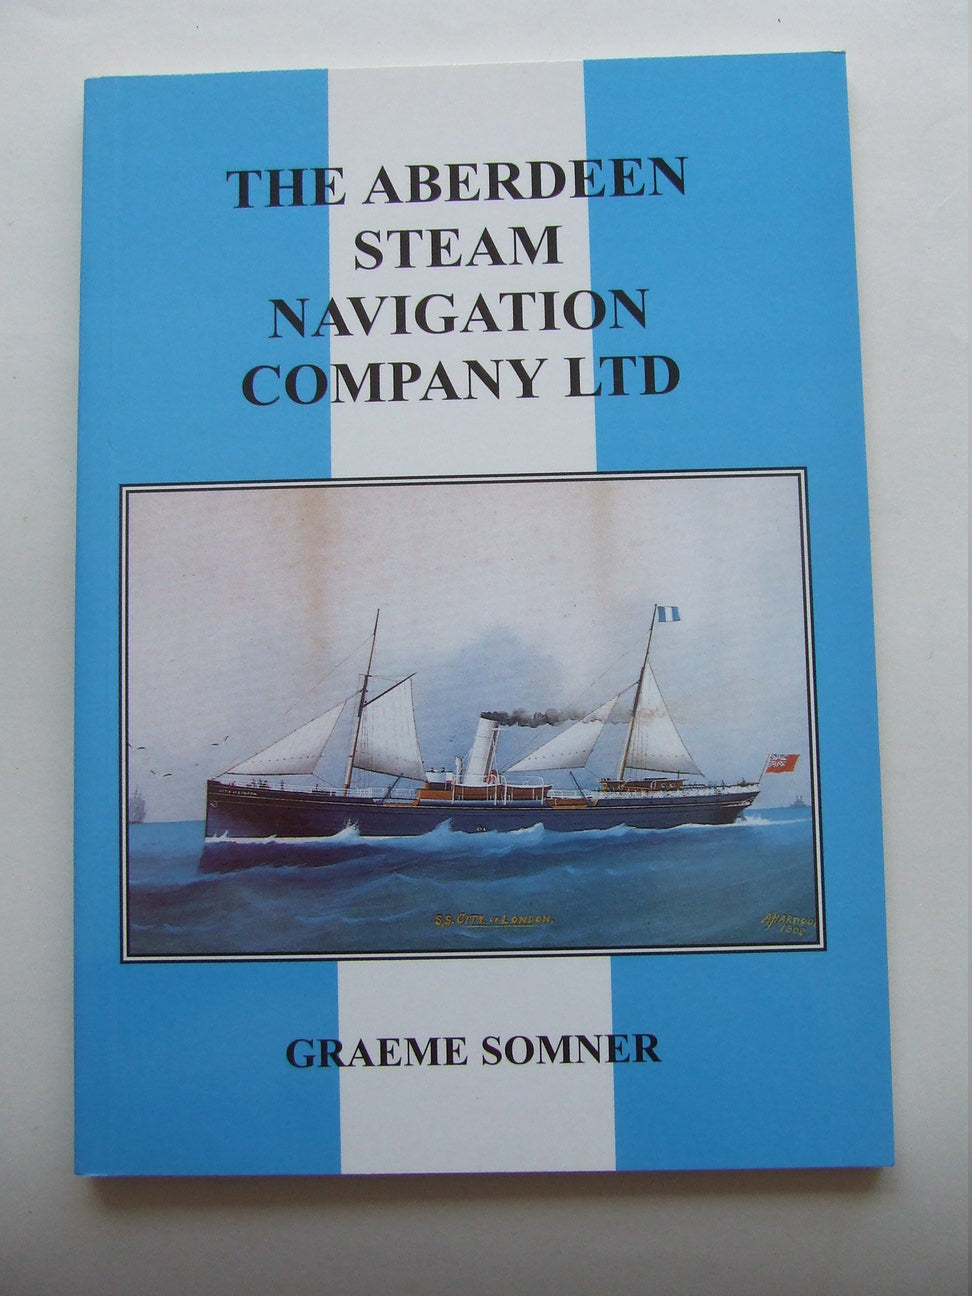 The Aberdeen Steam Navigation Company Ltd.